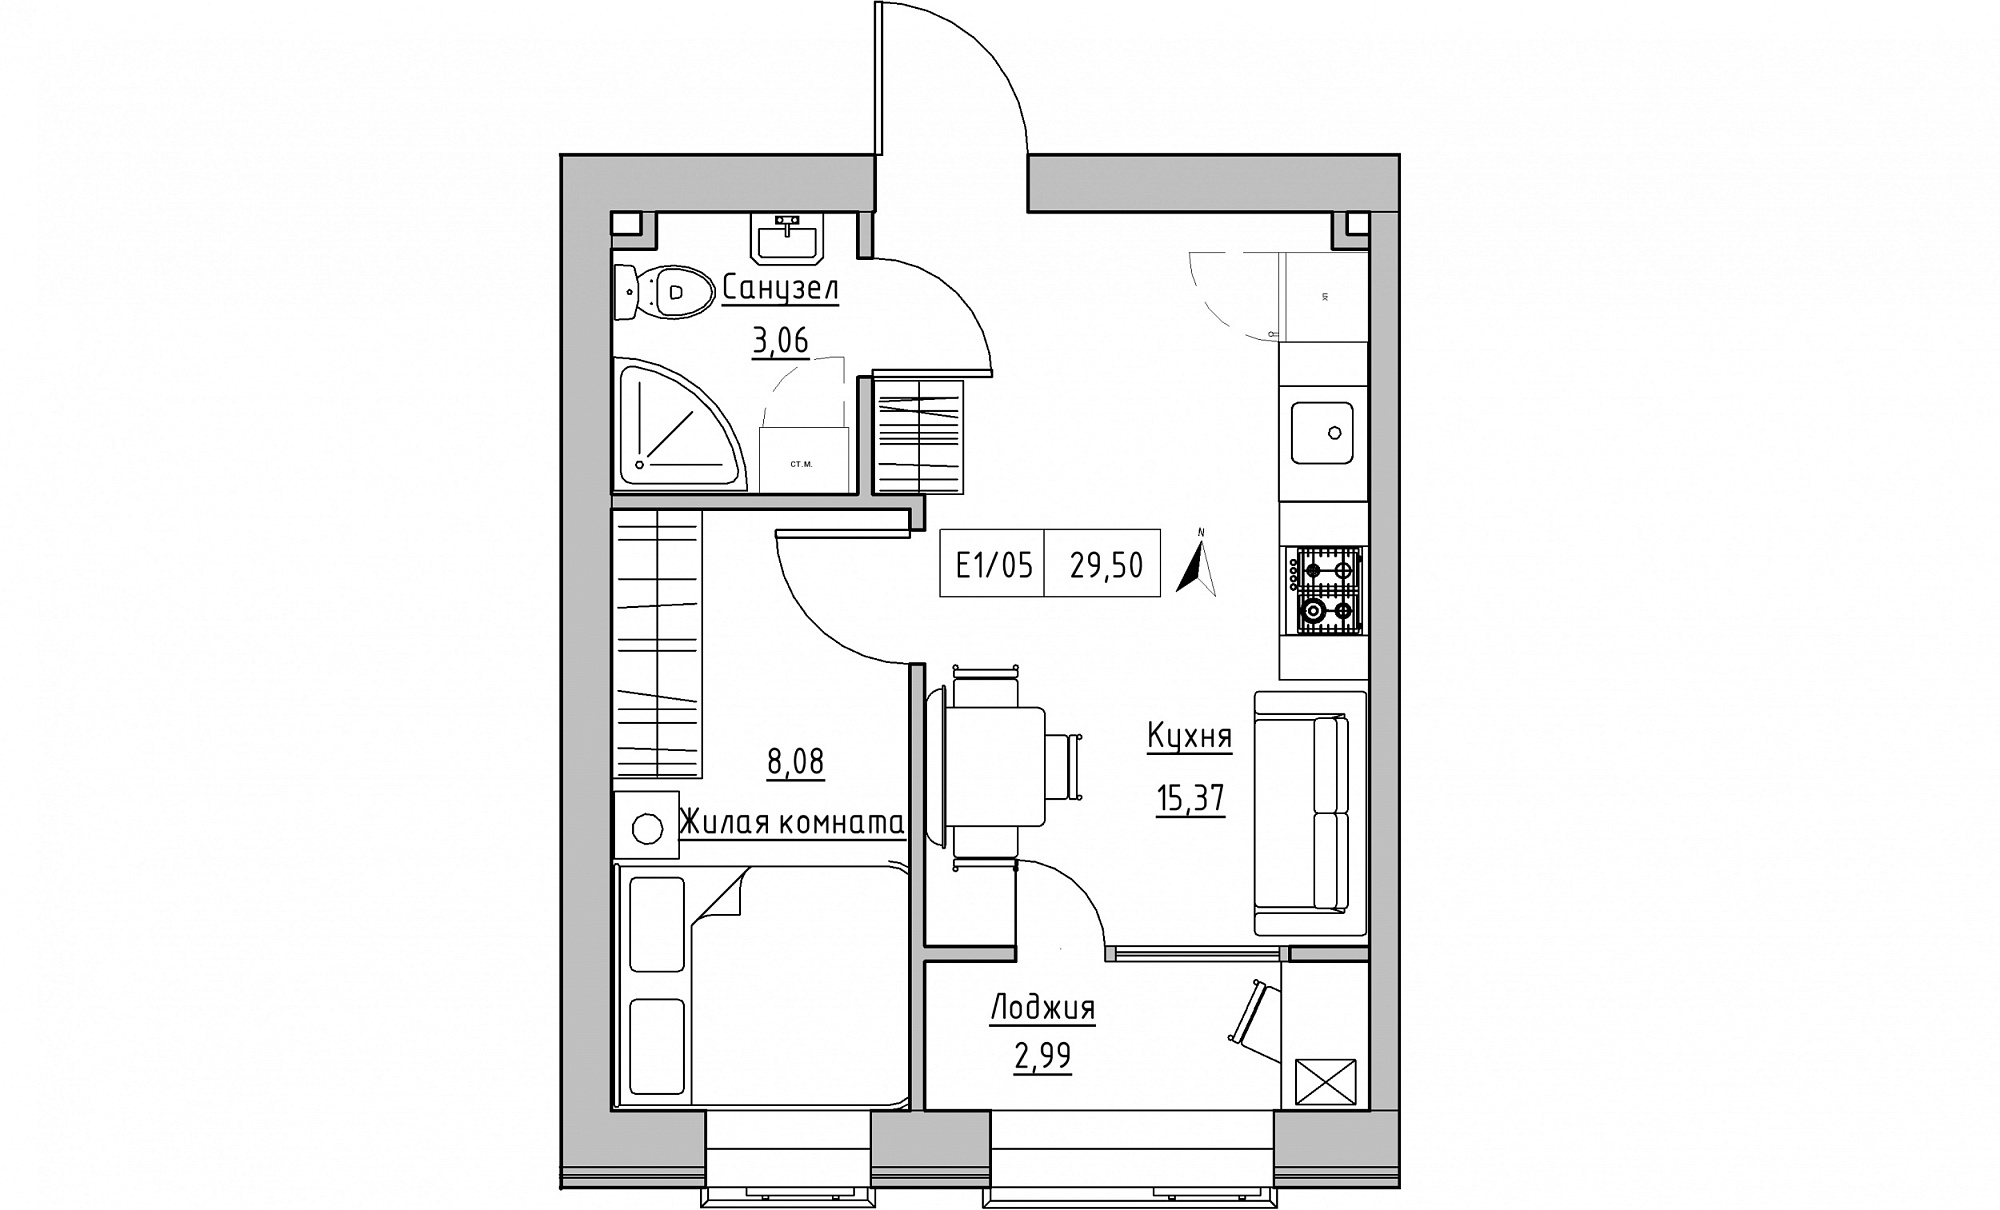 Планування 1-к квартира площею 29.5м2, KS-015-01/0010.